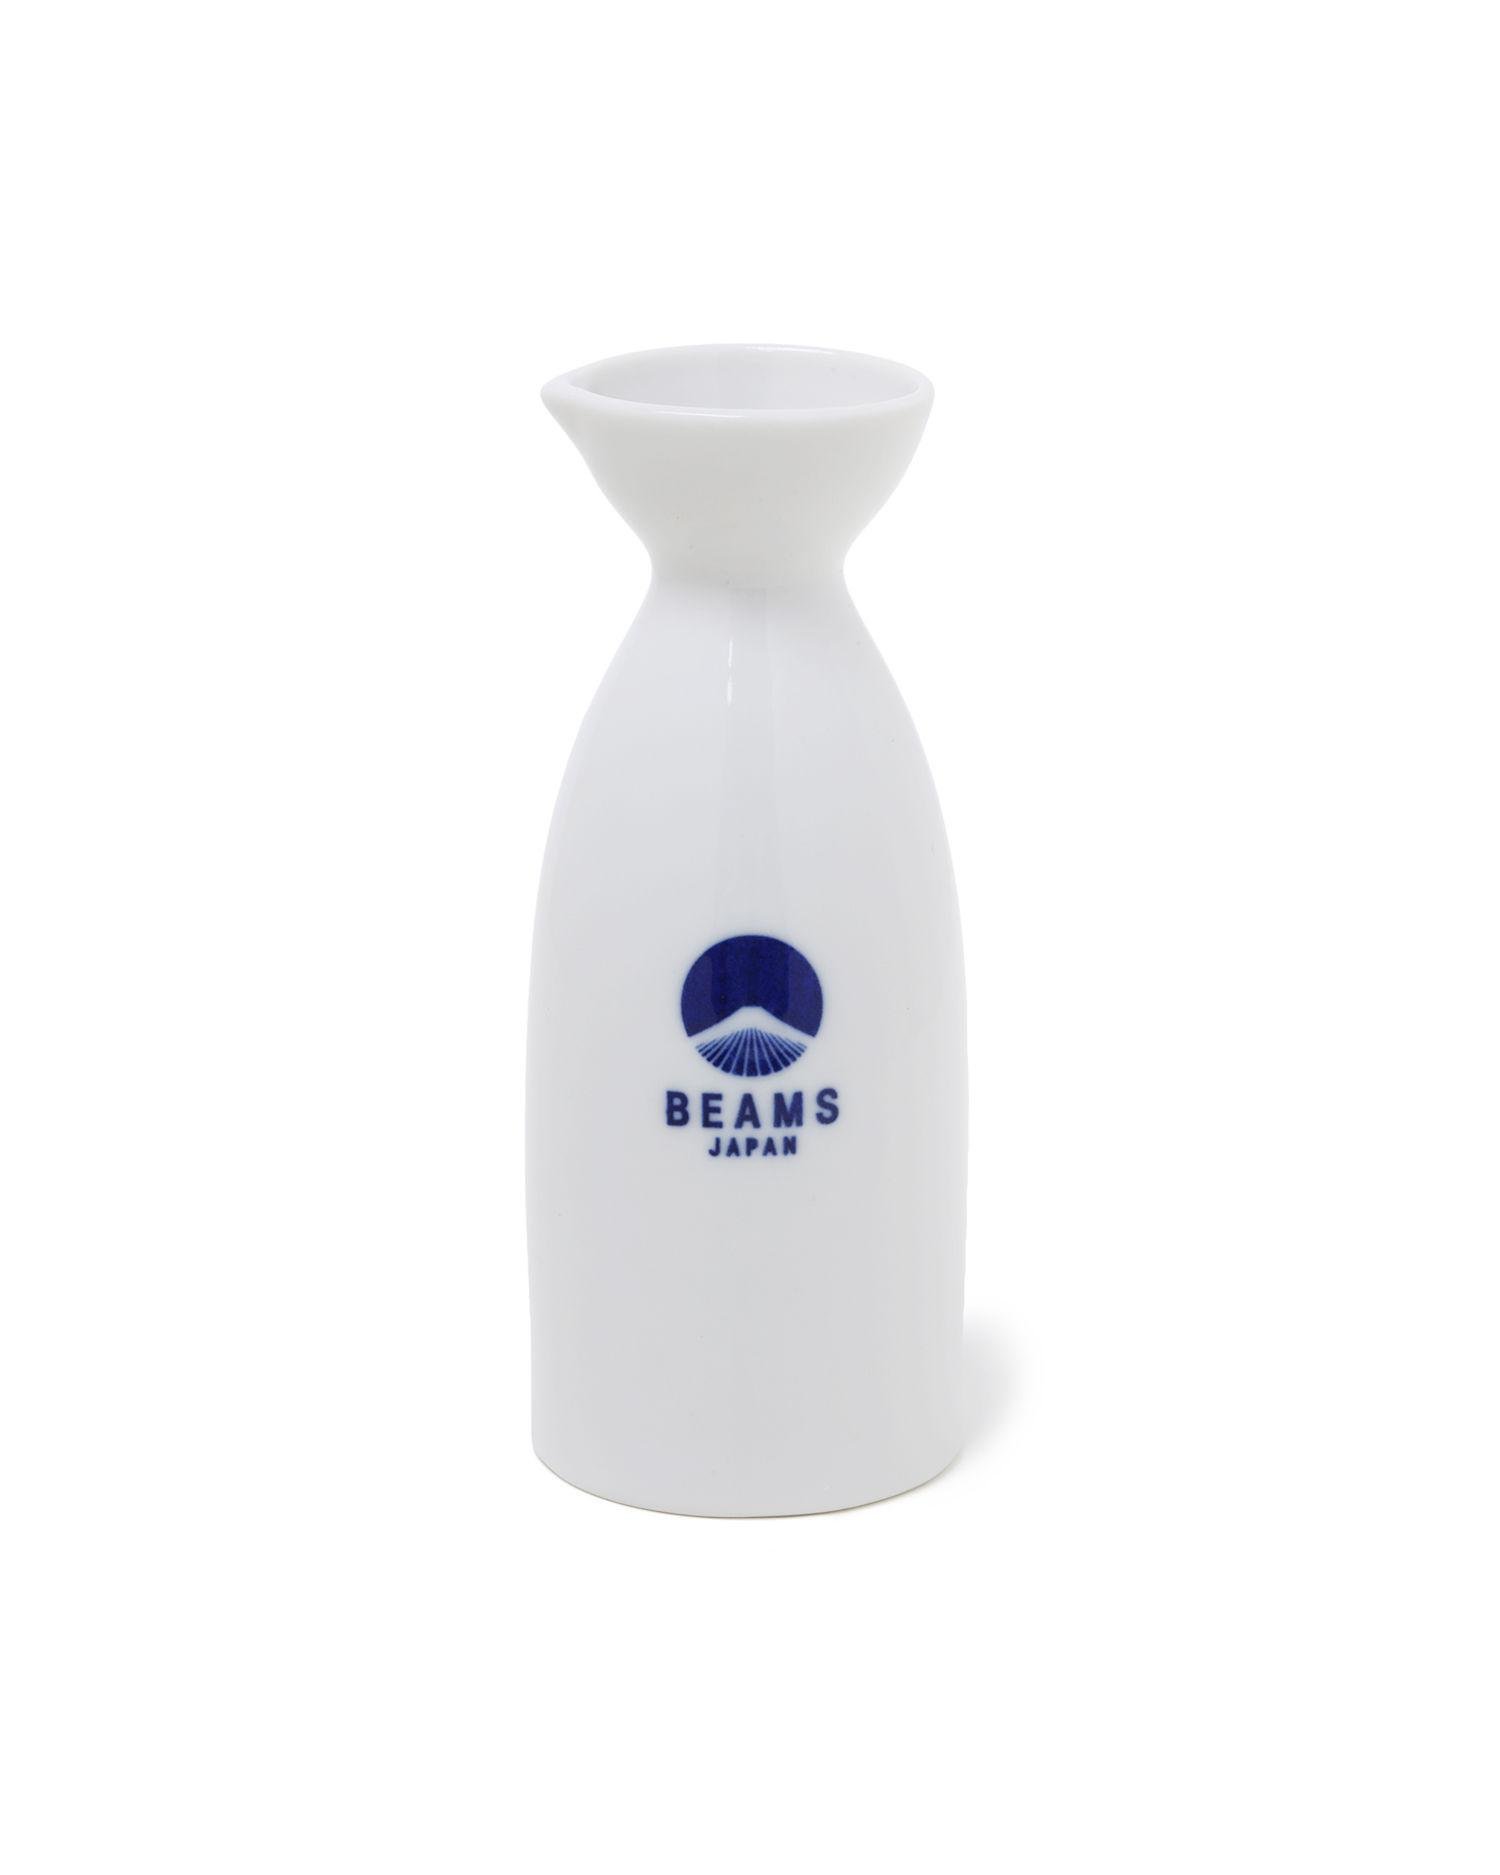 Short sake bottle by BEAMS JAPAN